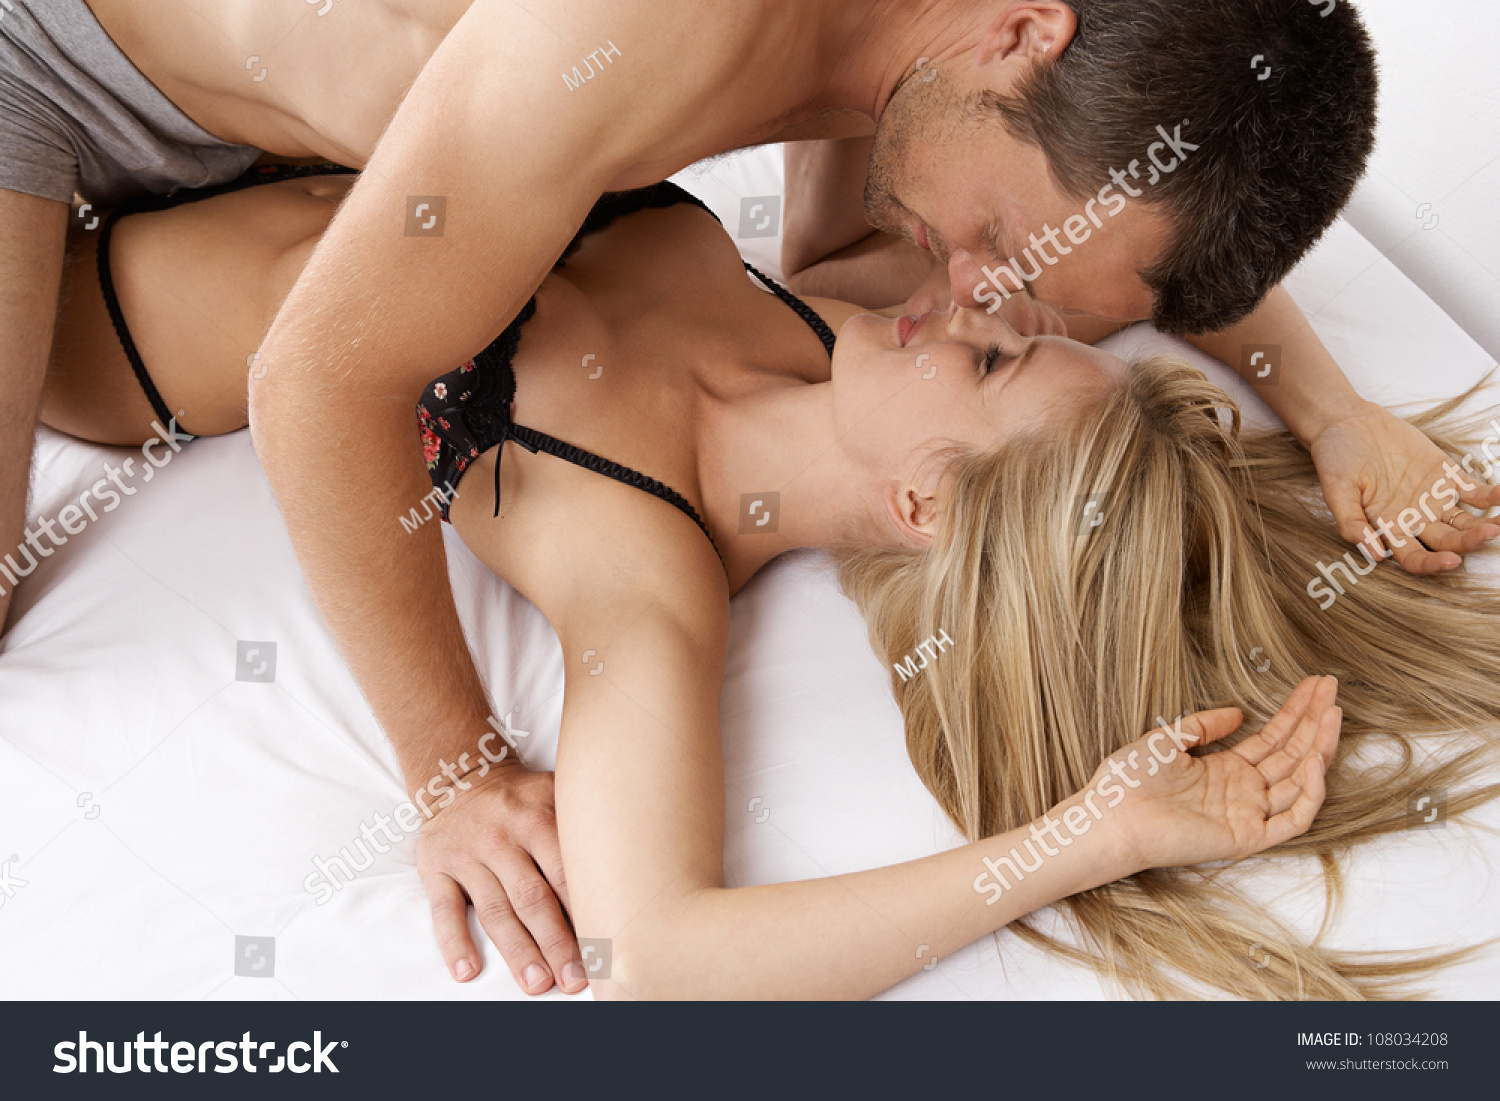 Hot Teen Couples Sex Videos Online Surf 26